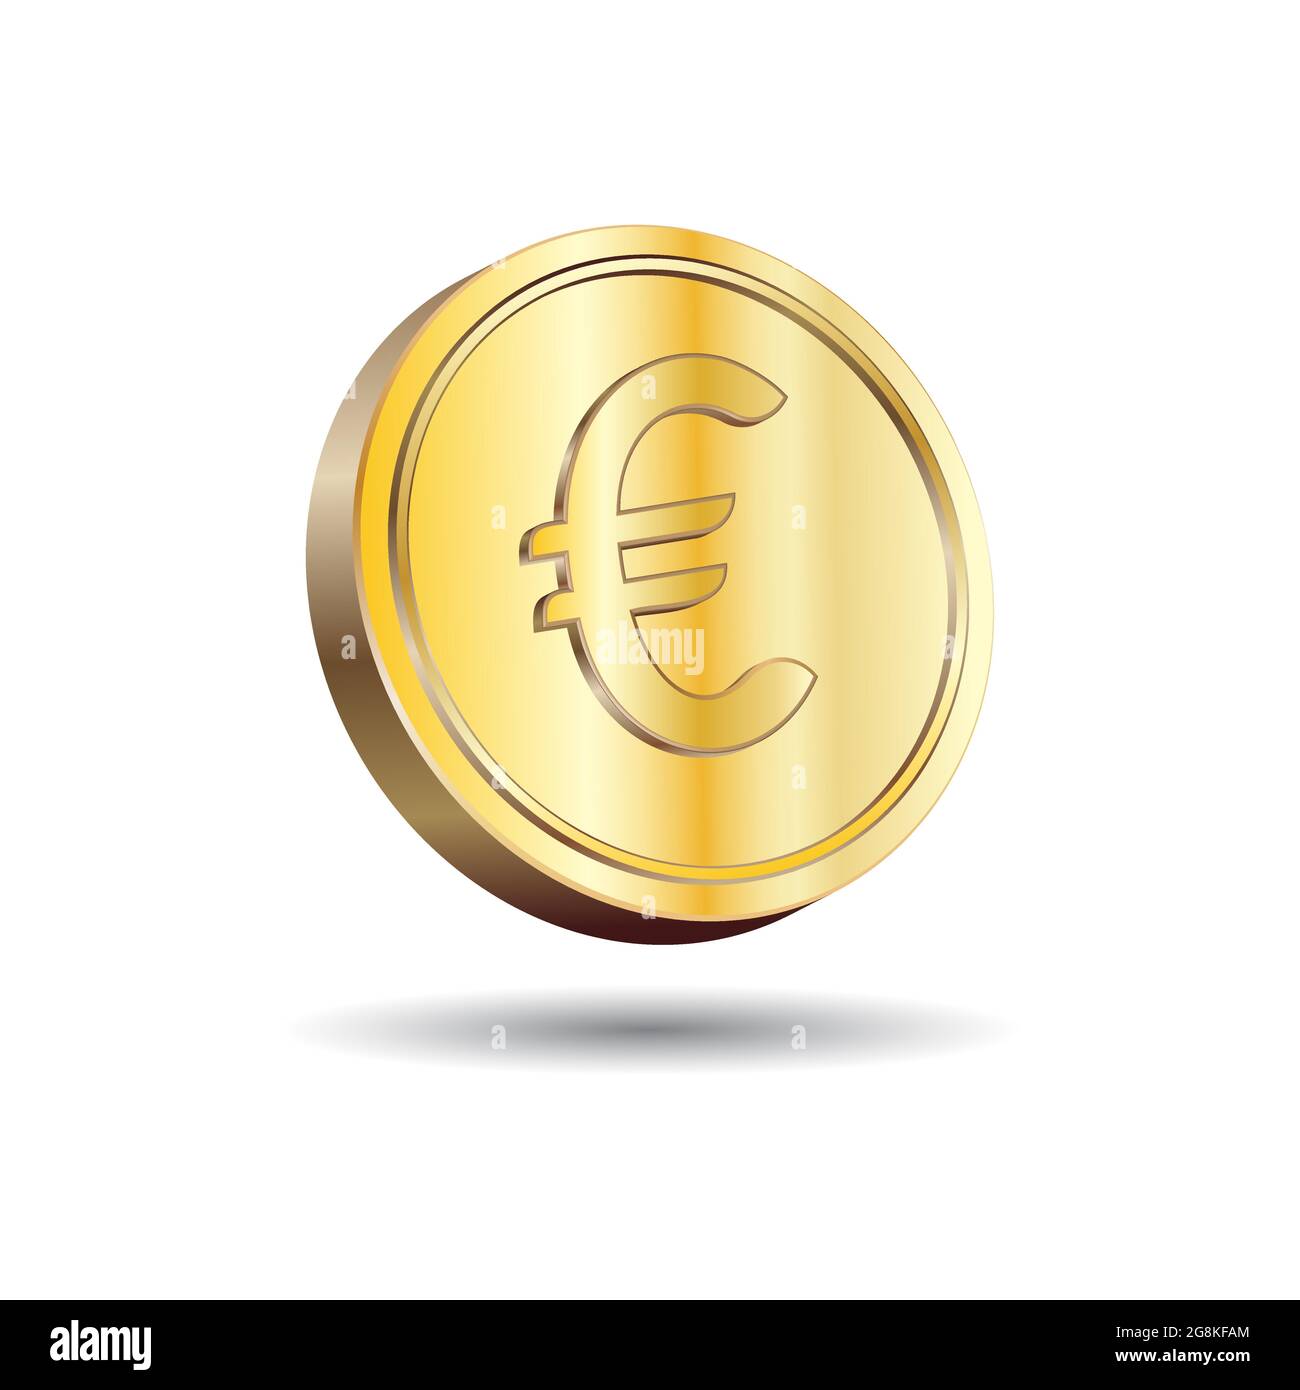 Immagine vettoriale 3D di Gold Euro Coin isolato su sfondo bianco. Simbolo della valuta dell'Unione europea. Illustrazione Vettoriale